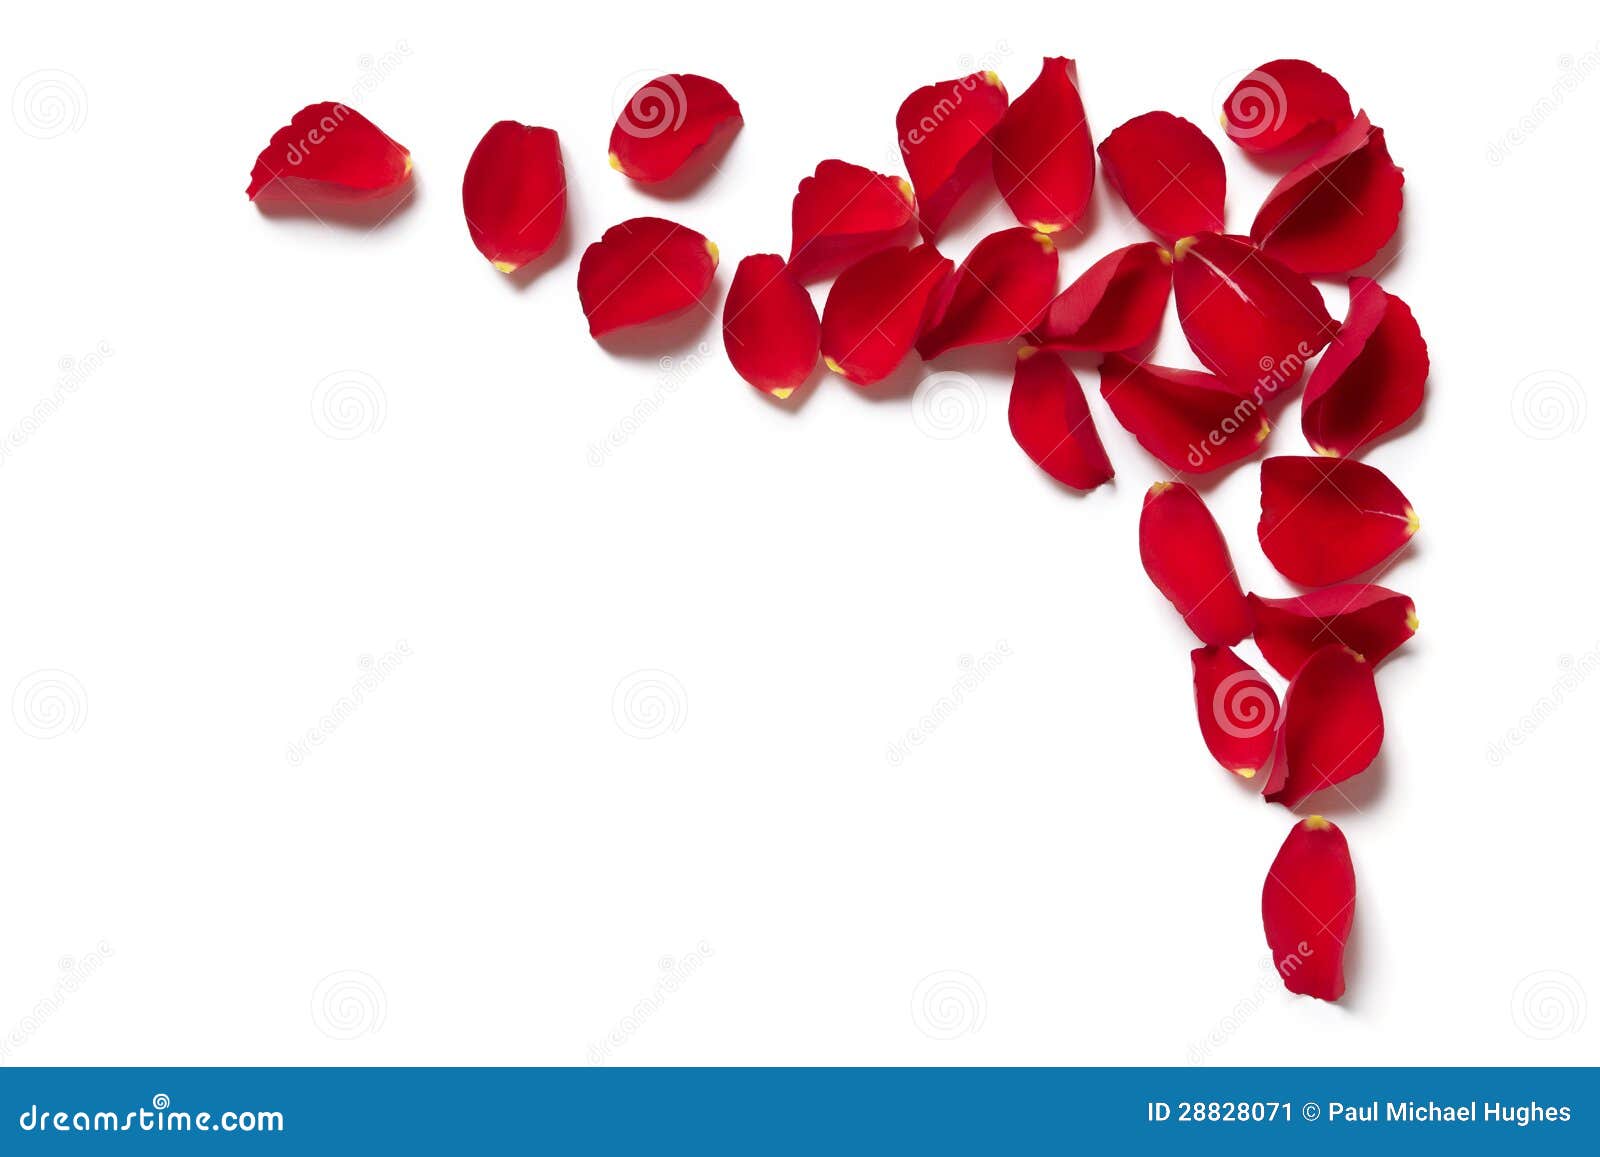 red rose petal border